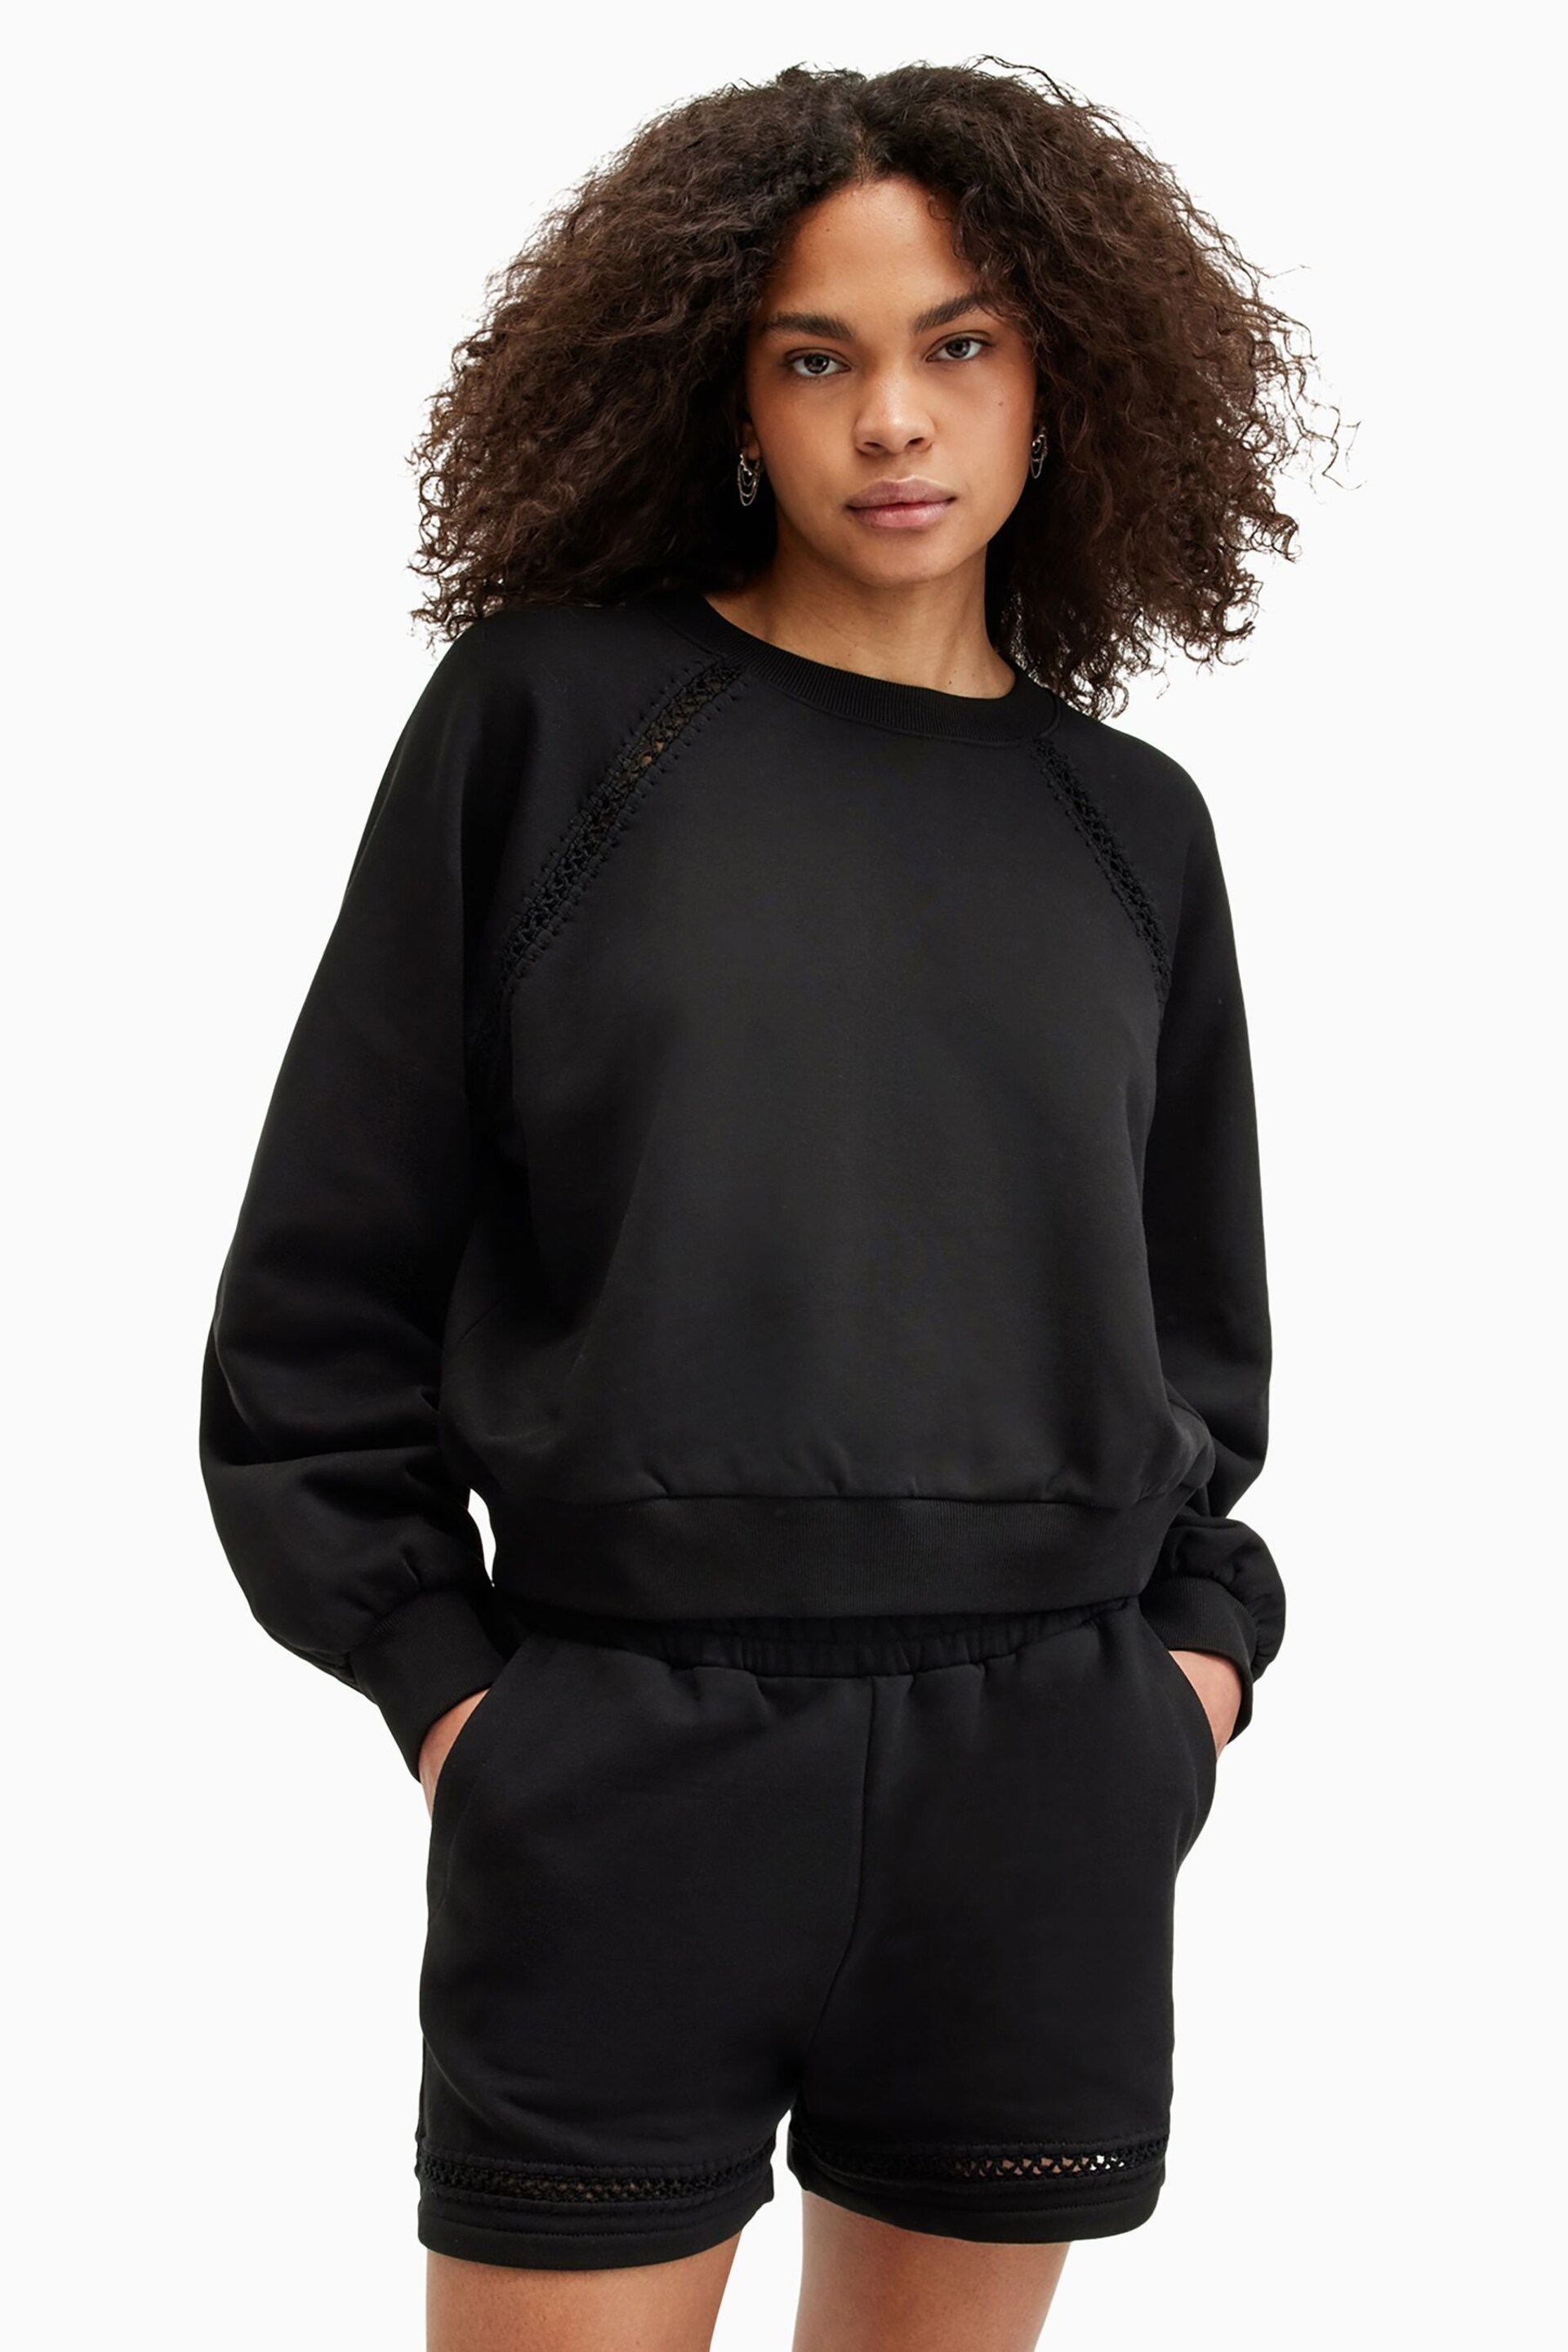 AllSaints Black Ewelina Sweatshirt - Image 1 of 7